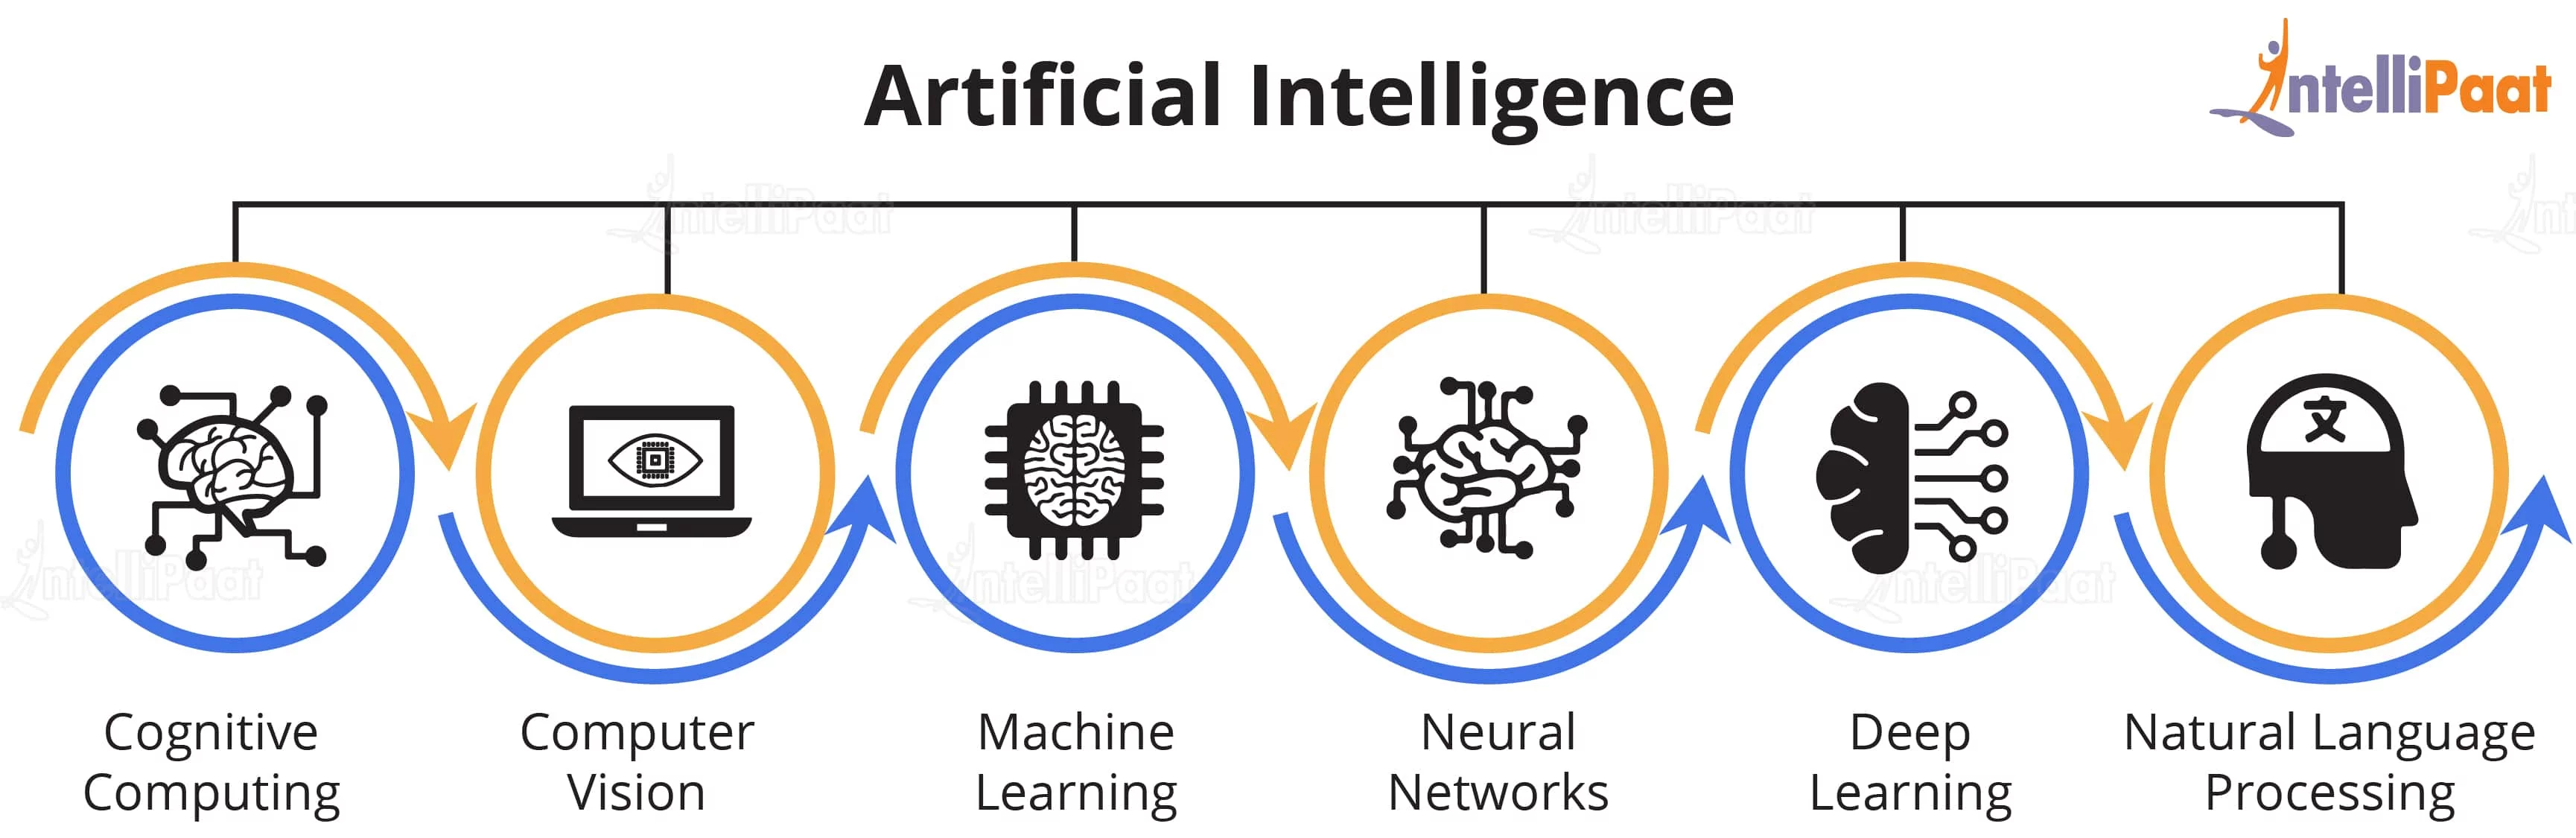 Искусственный интеллект подробно. Машинное обучение. Машинное обучение (Machine Learning). Машинное обучение и искусственный интеллект. How Artificial Intelligence works.